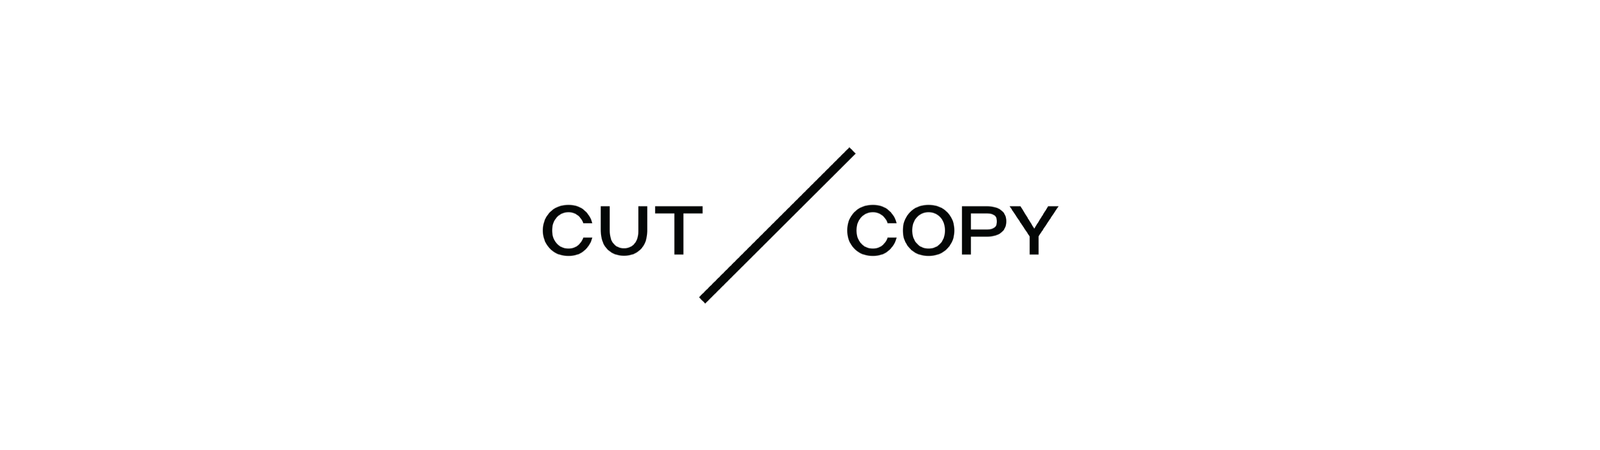 Cut Copy